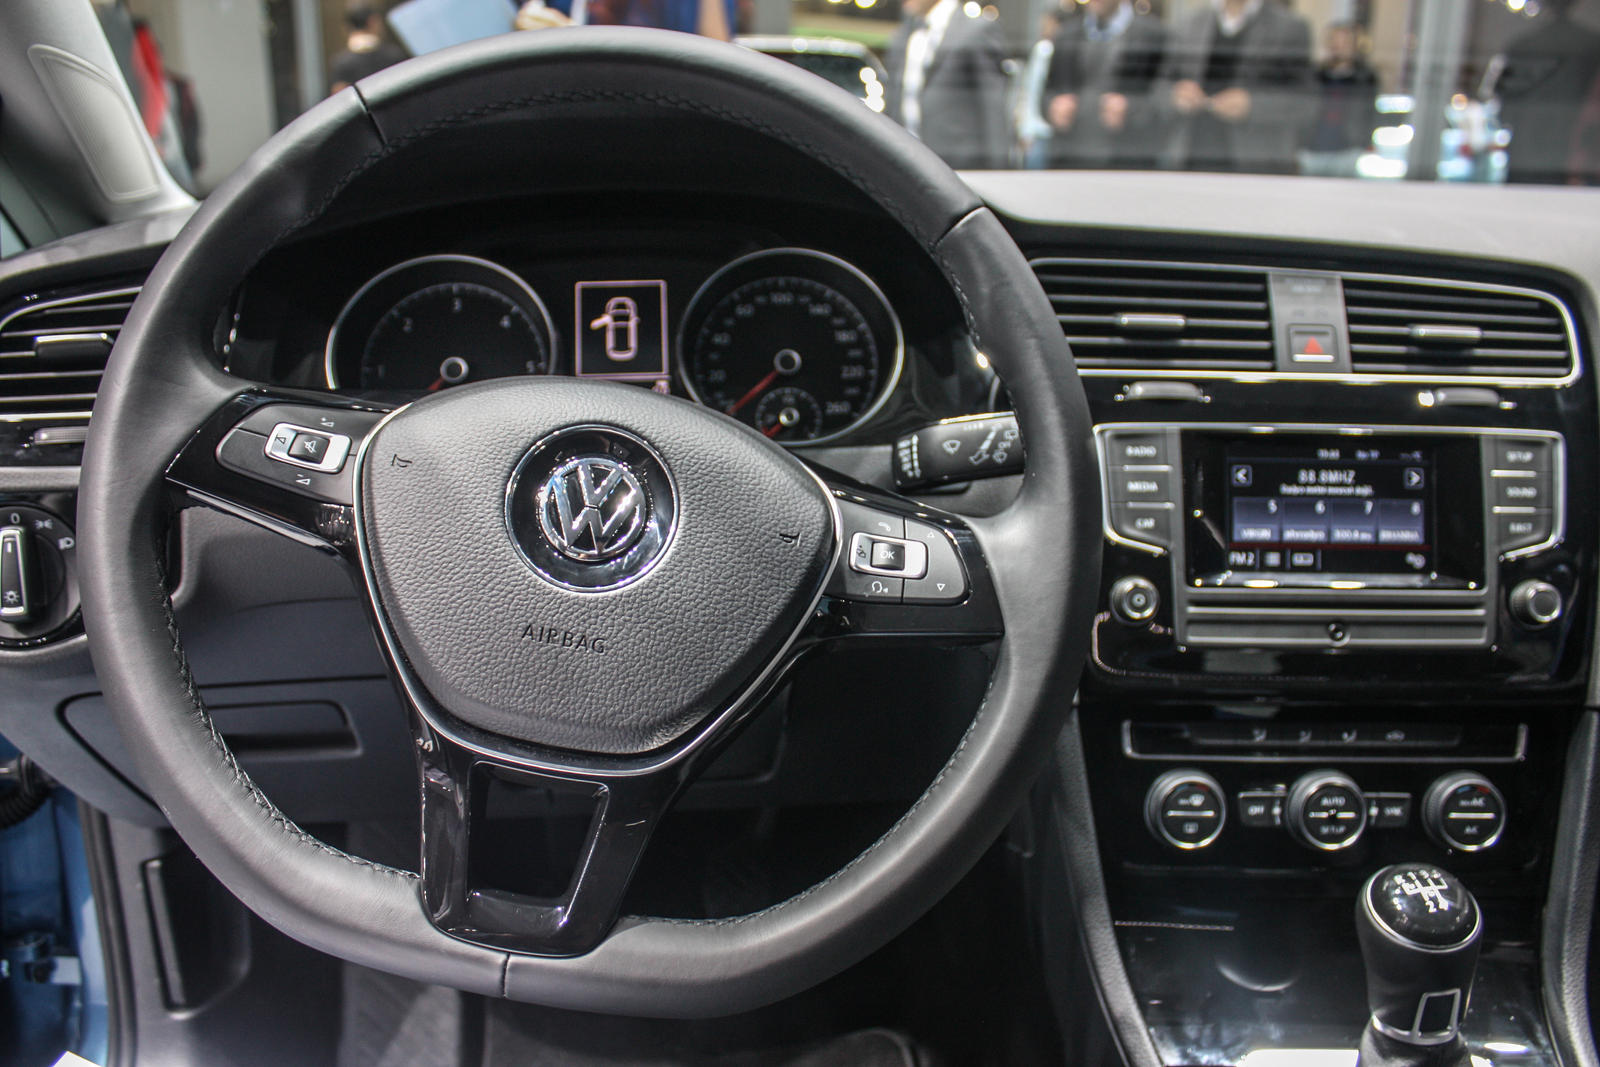 2013 Volkswagen Golf VII by seznur on DeviantArt